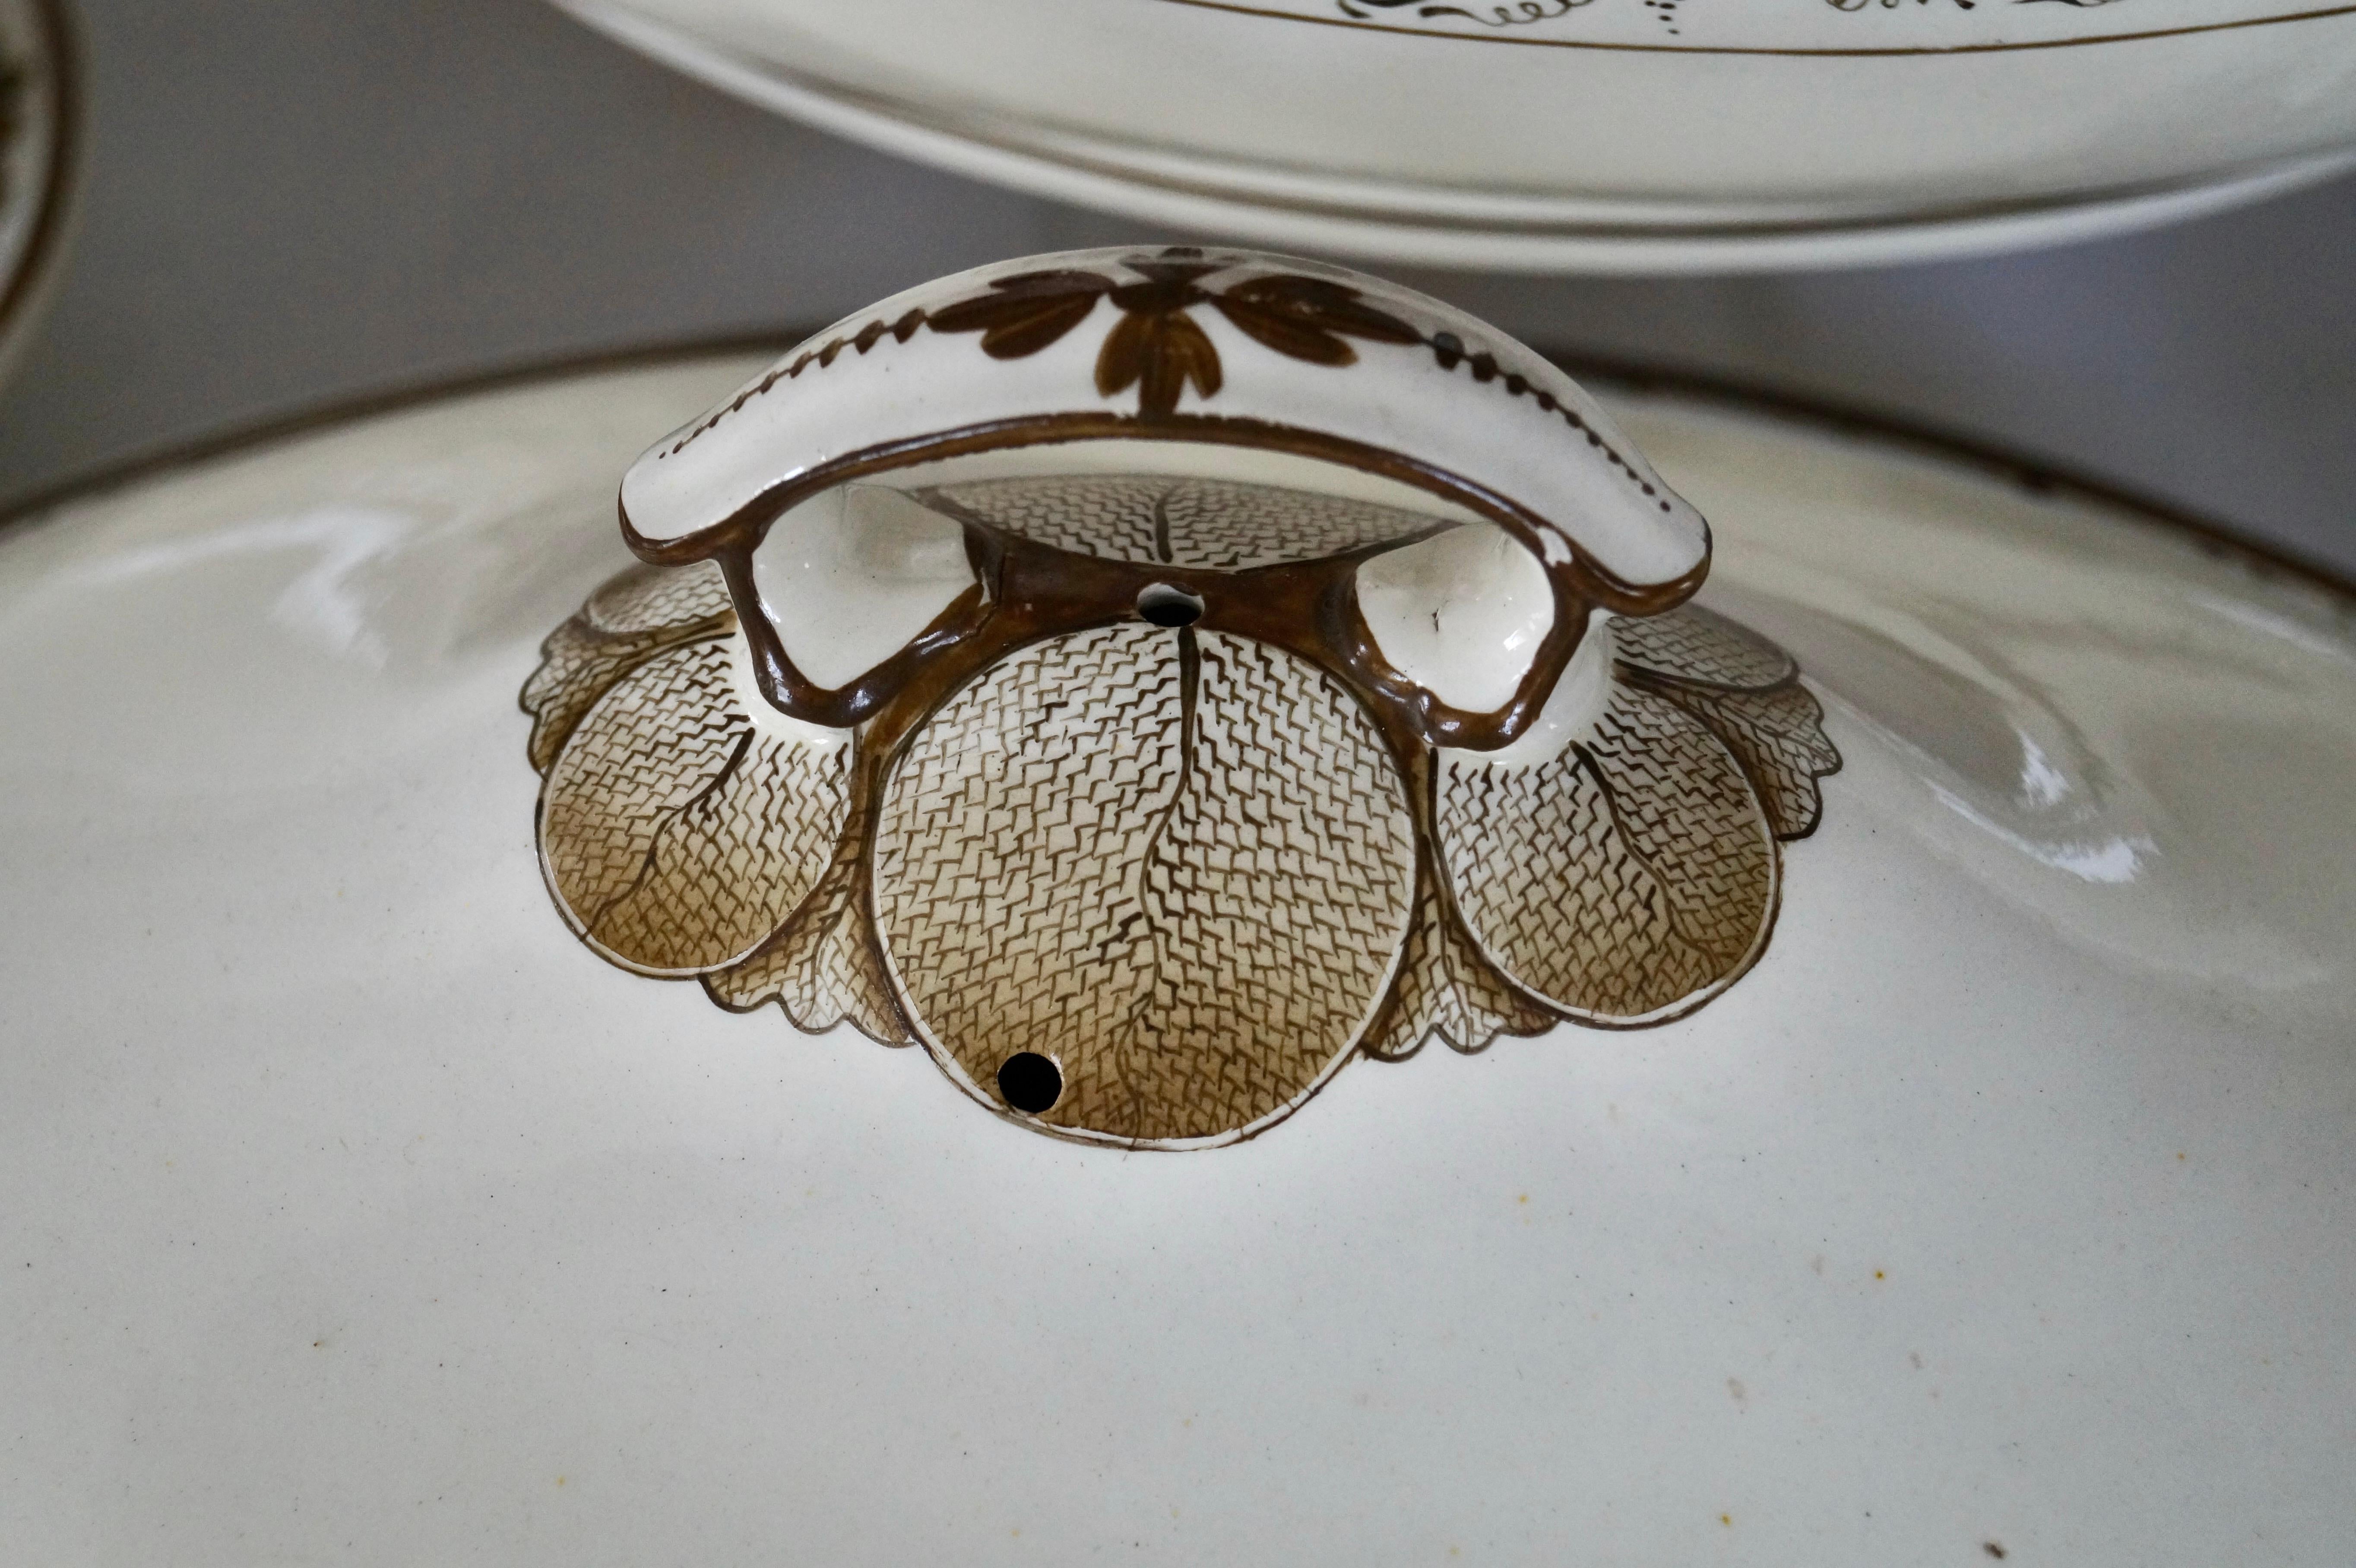 Magnifique et rare pièce de vaisselle ancienne Copeland Spode Creamware, datant d'environ 1800 Bon état - En vente à BAAMBRUGGE, NL